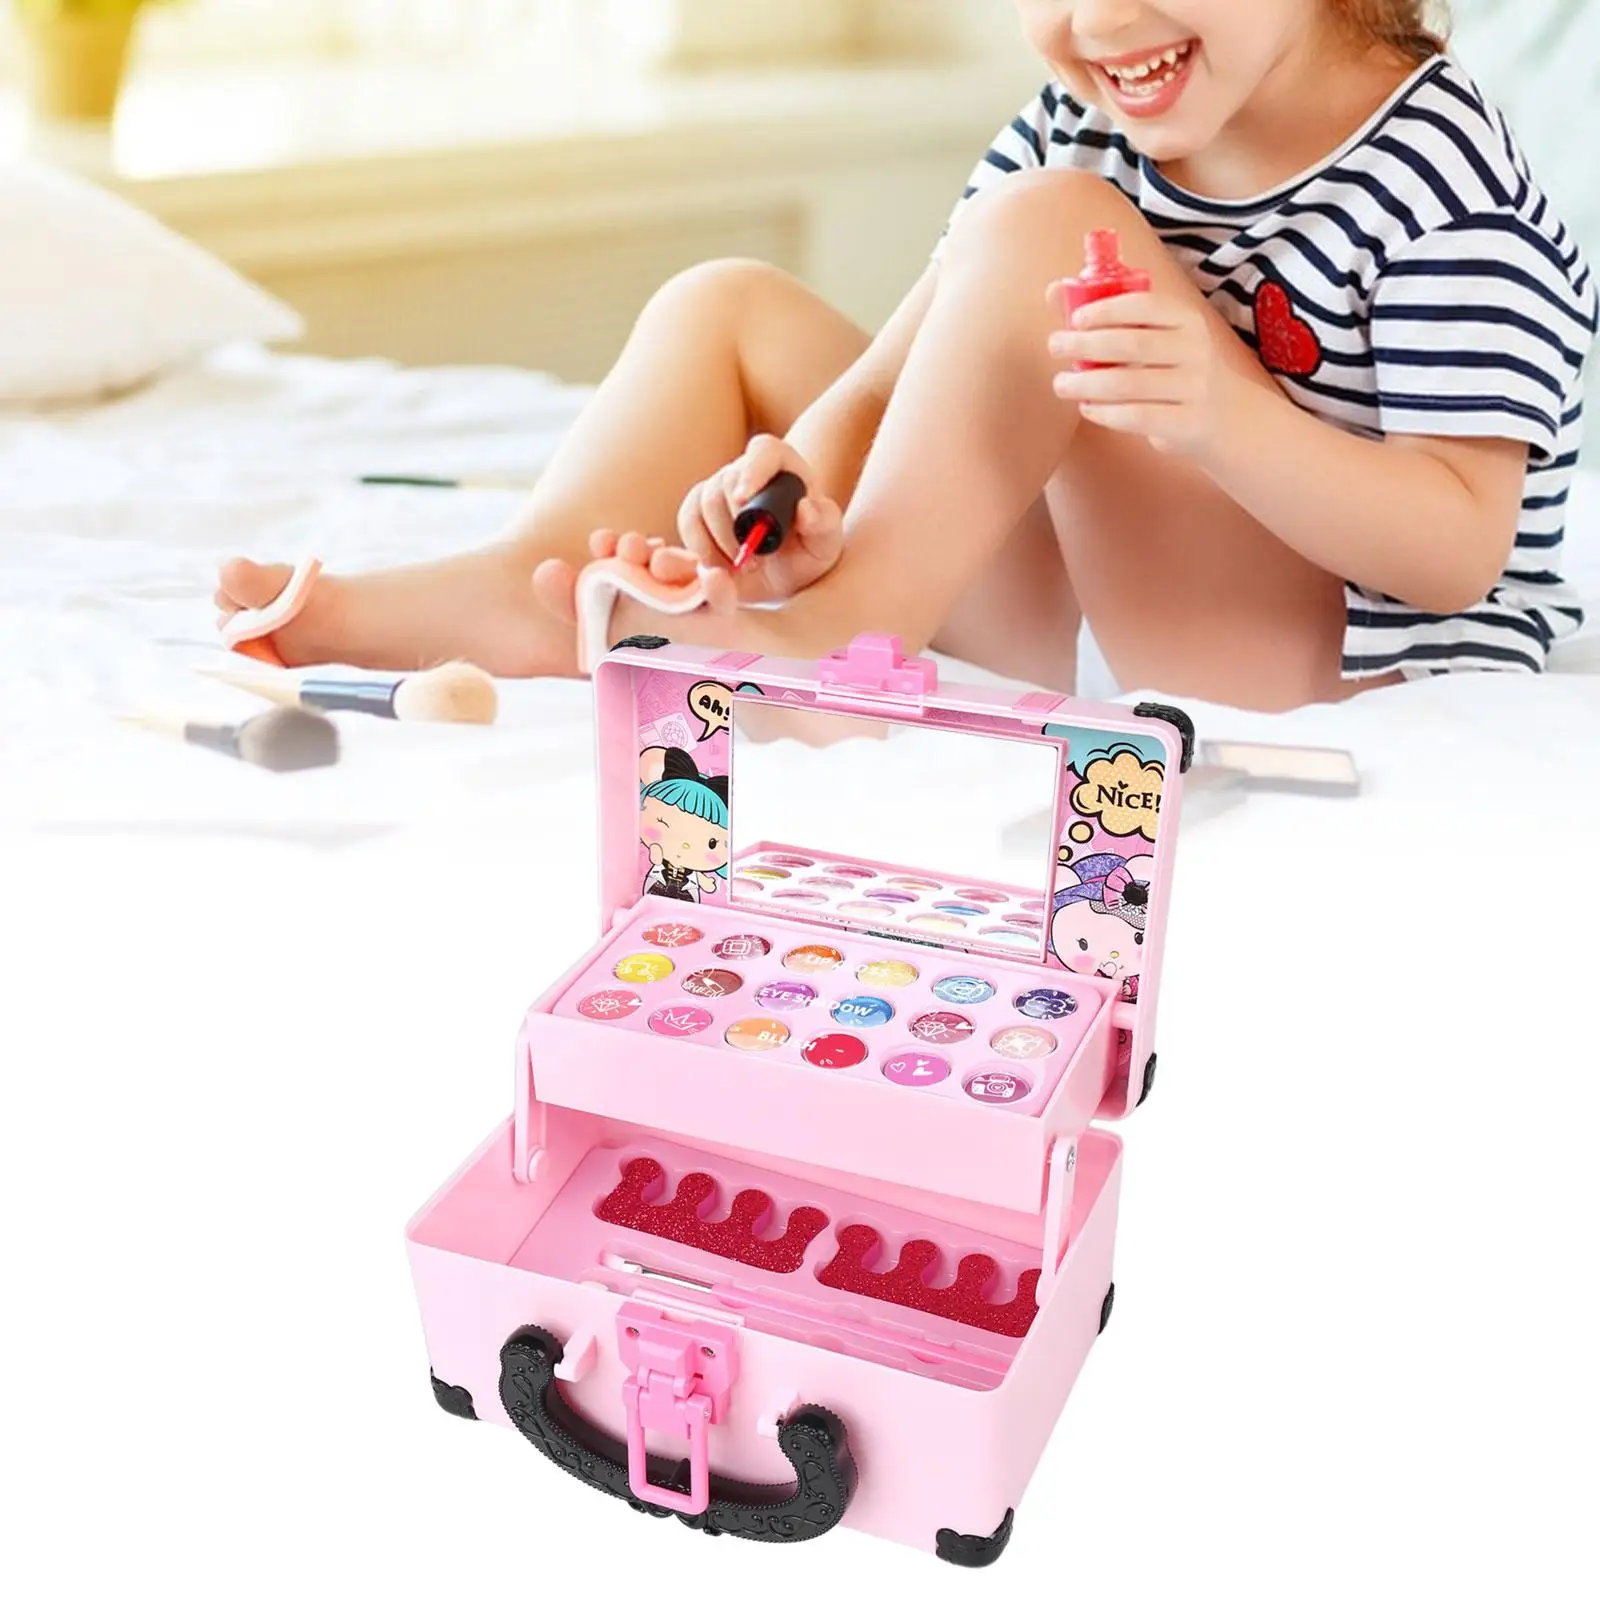 Cosmetics Makeup Toy Set Dresser Toy Pretend Makeup Accessories Pretend Play Makeup Toy Set for Girls Toddlers Children Kids